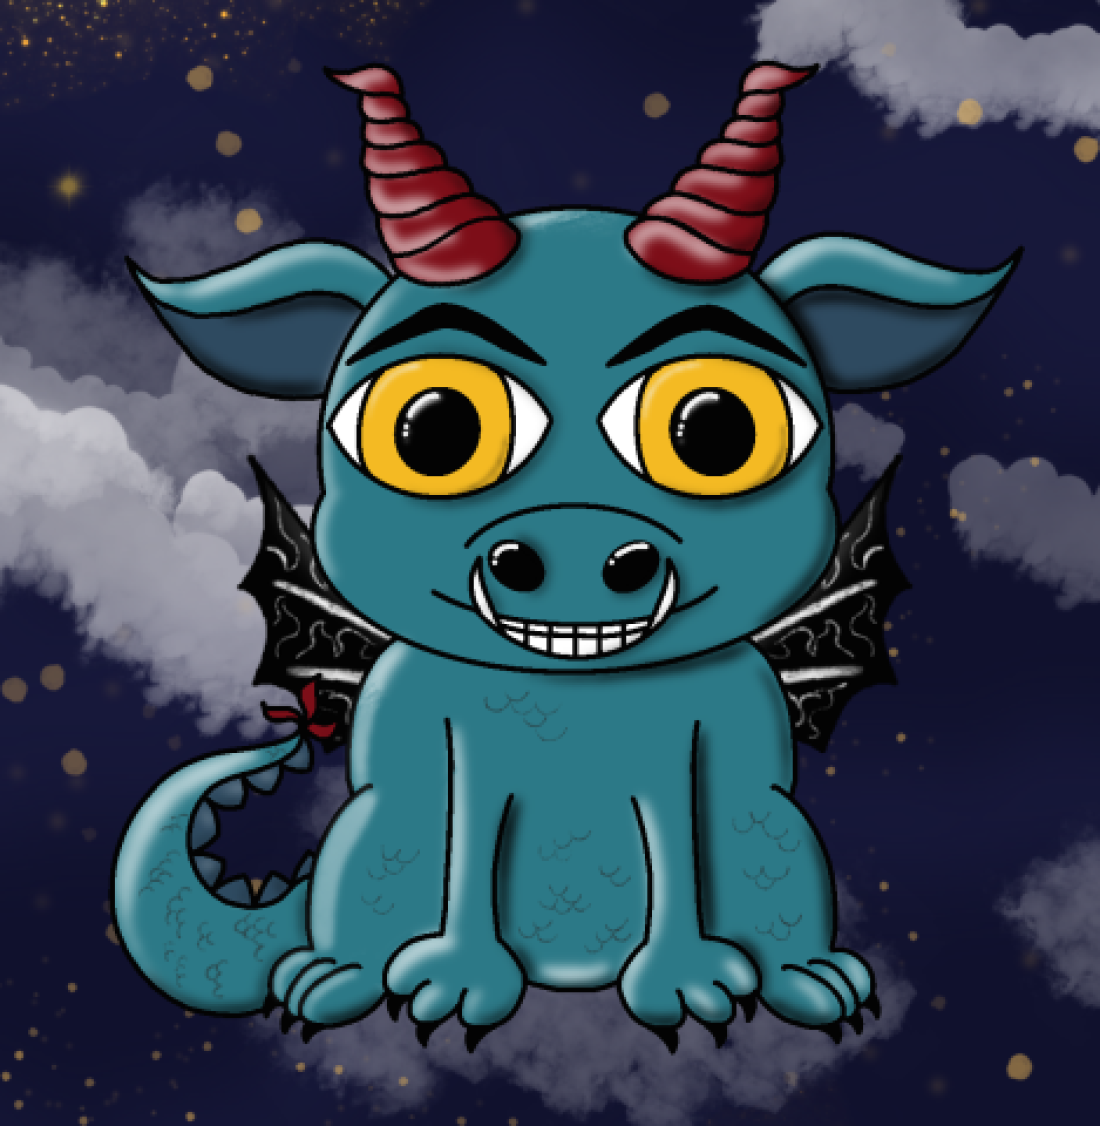 Comicfigur Samy, der kleine Dämon, vor einem wolkigen Nachthimmel